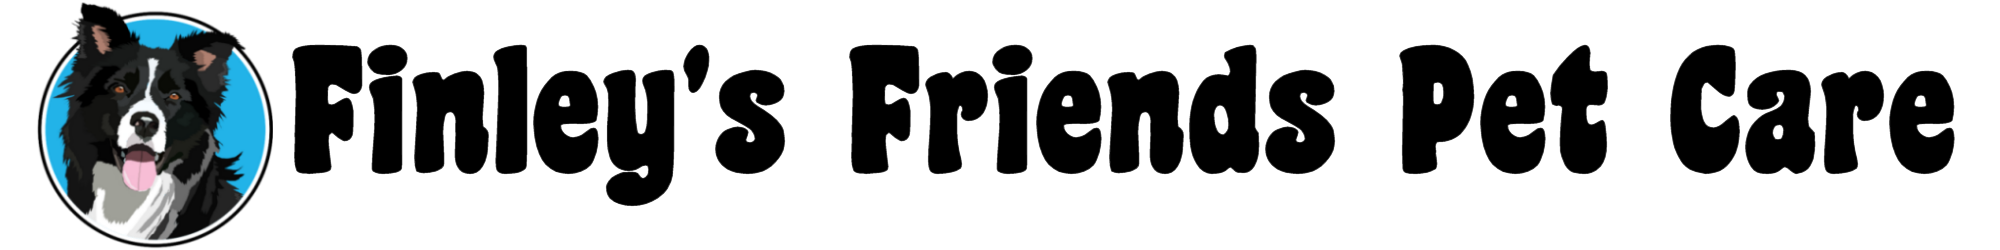 Finleys Friends Pet Care logo